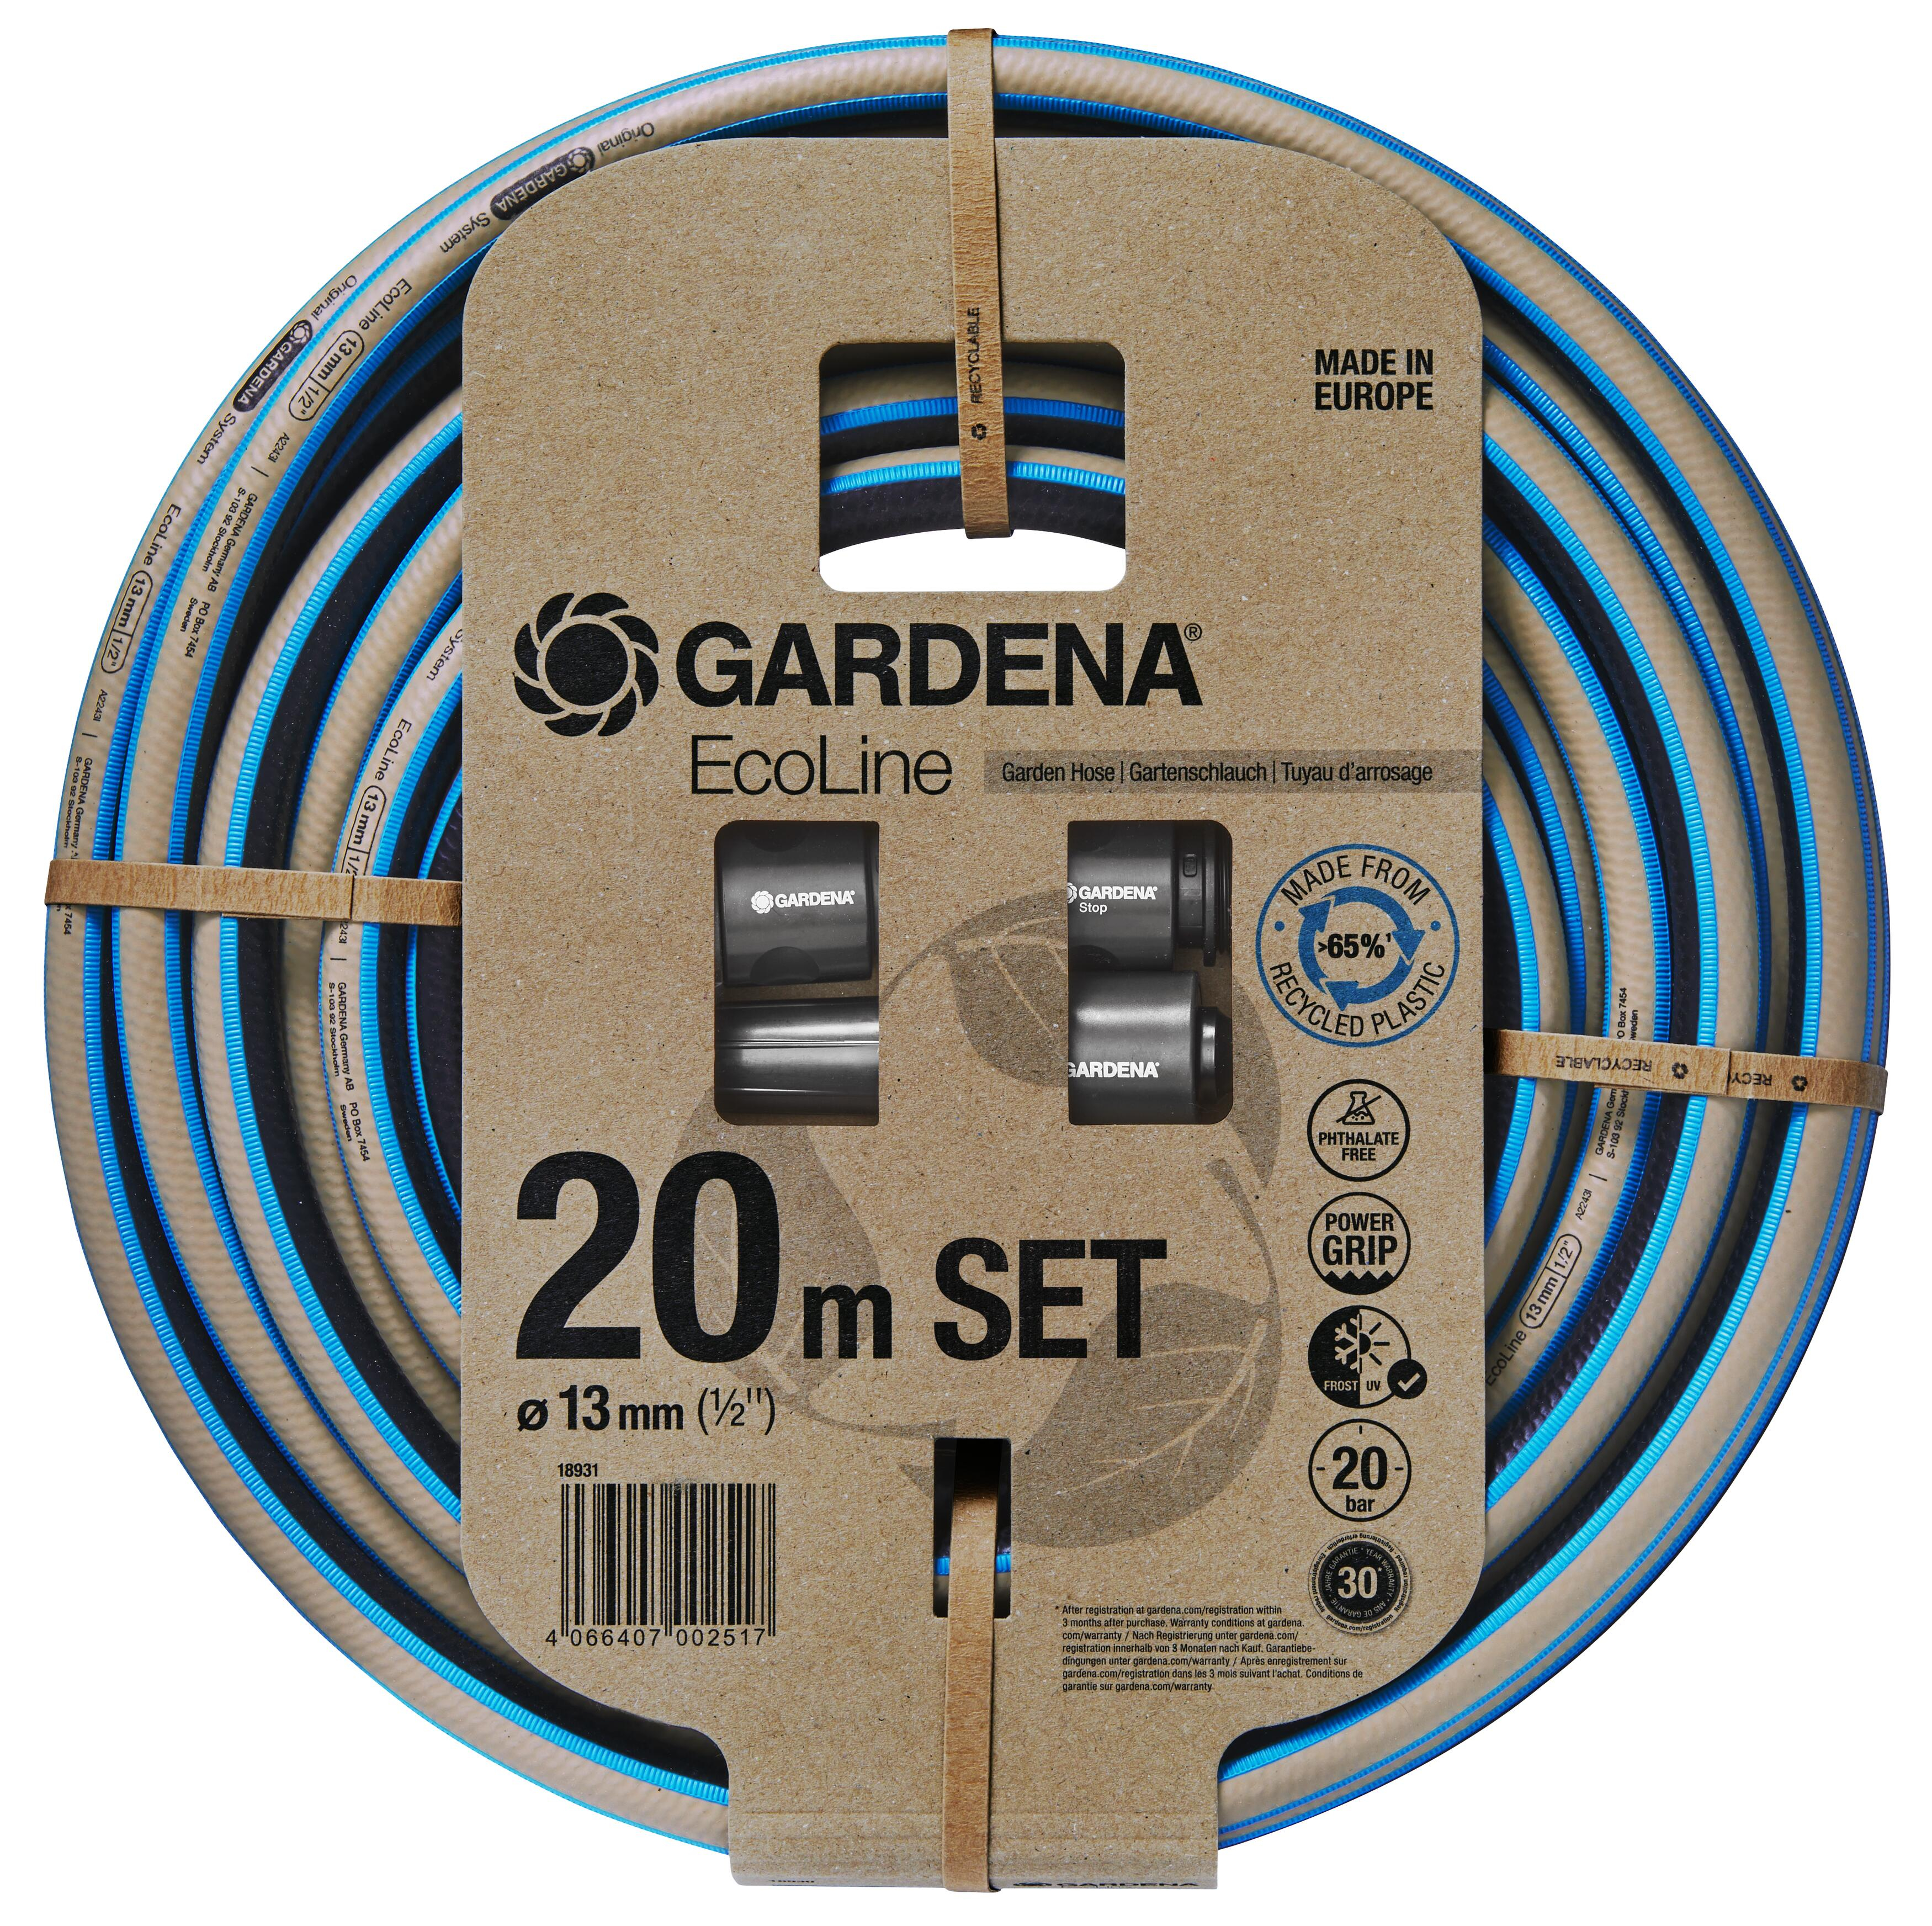 Λάστιχο Gardena EcoLine 13 mm (1/2'), 20 m - σετ 18931-20